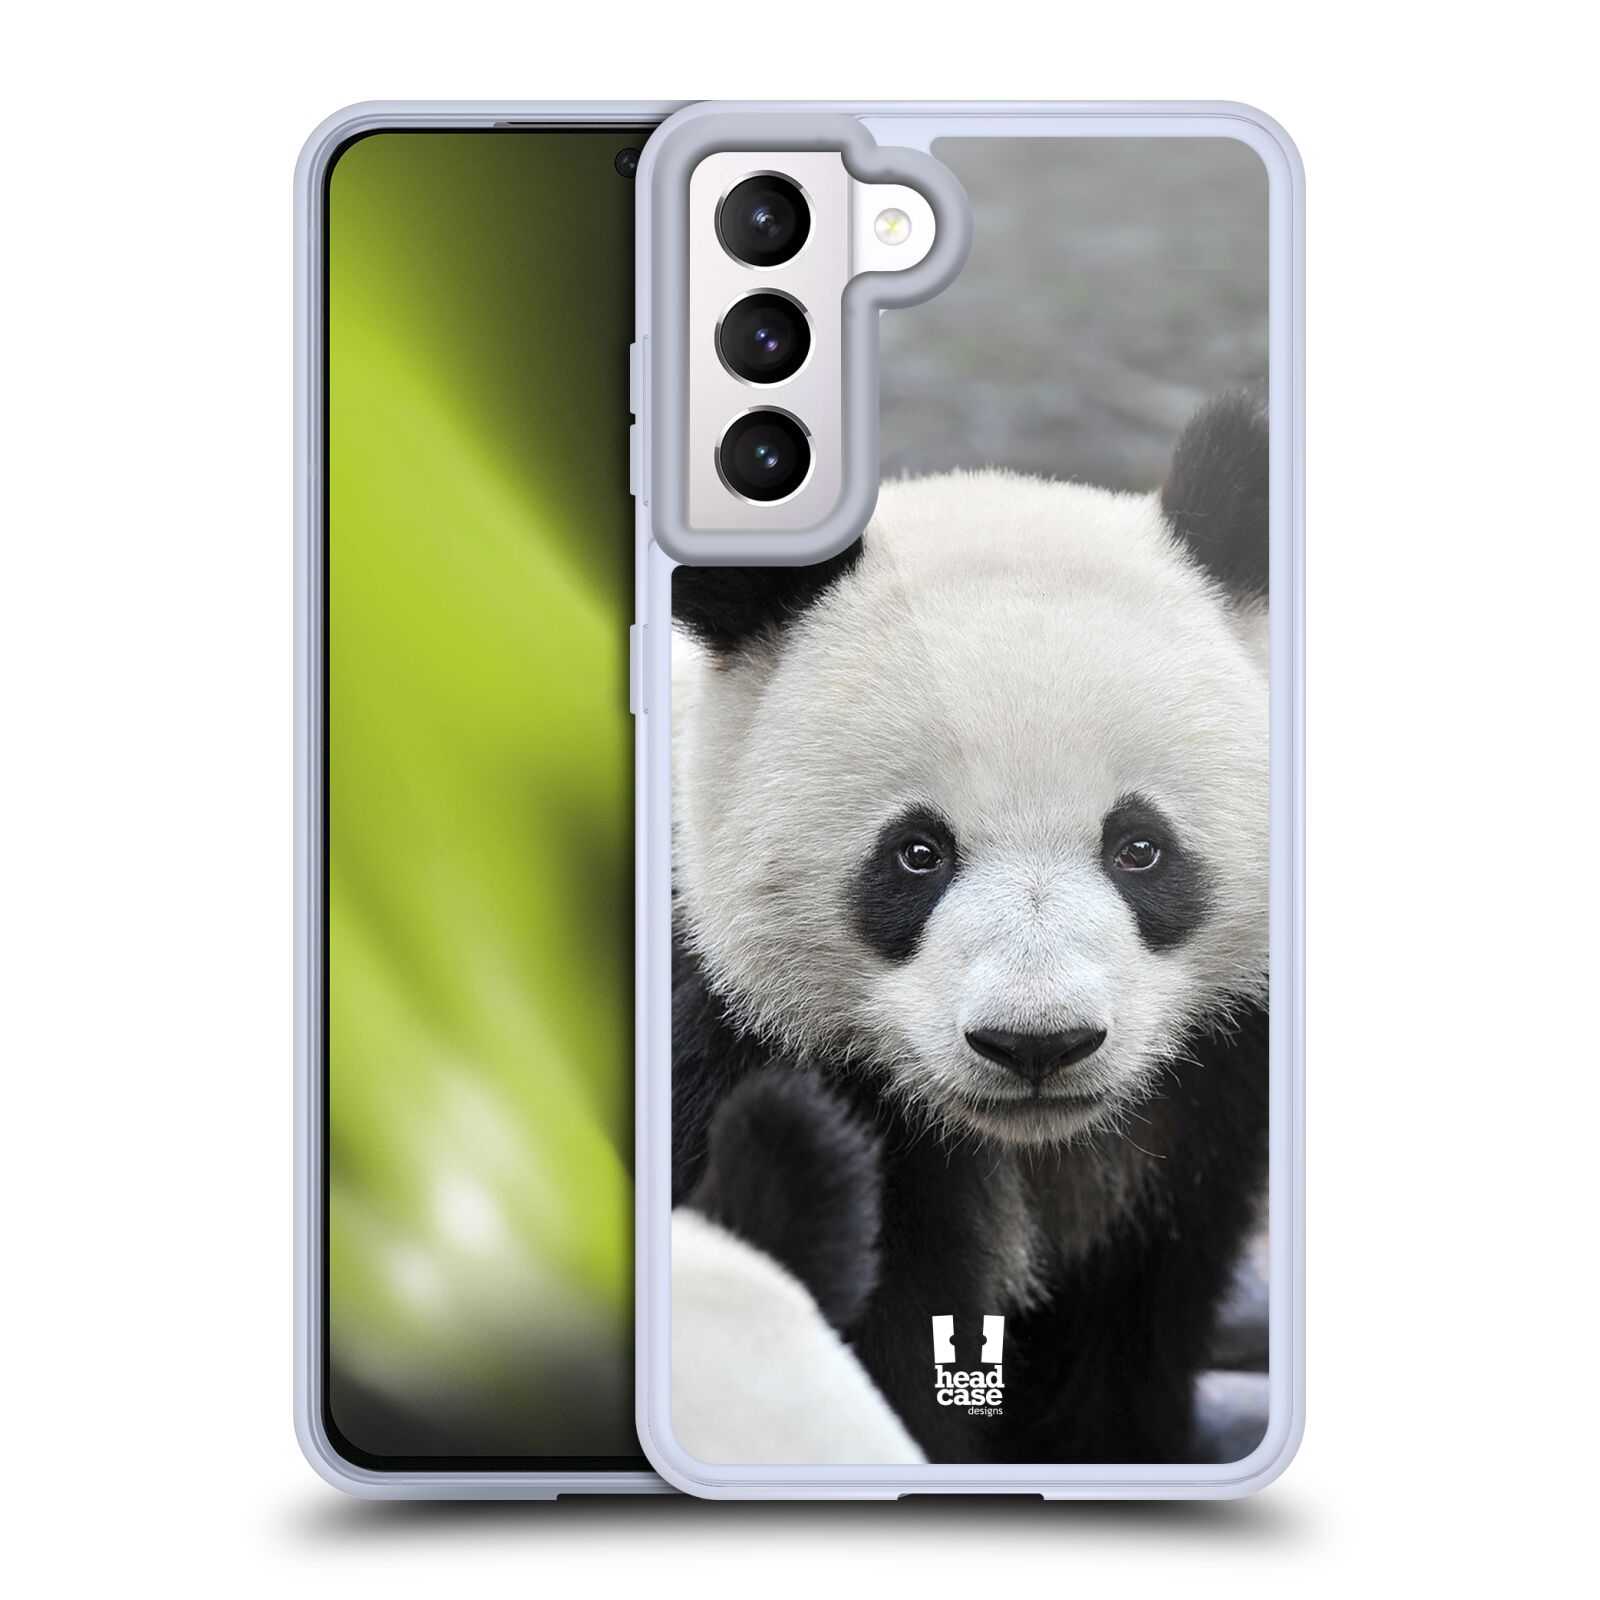 Plastový obal HEAD CASE na mobil Samsung Galaxy S21 5G vzor Divočina, Divoký život a zvířata foto MEDVĚD PANDA